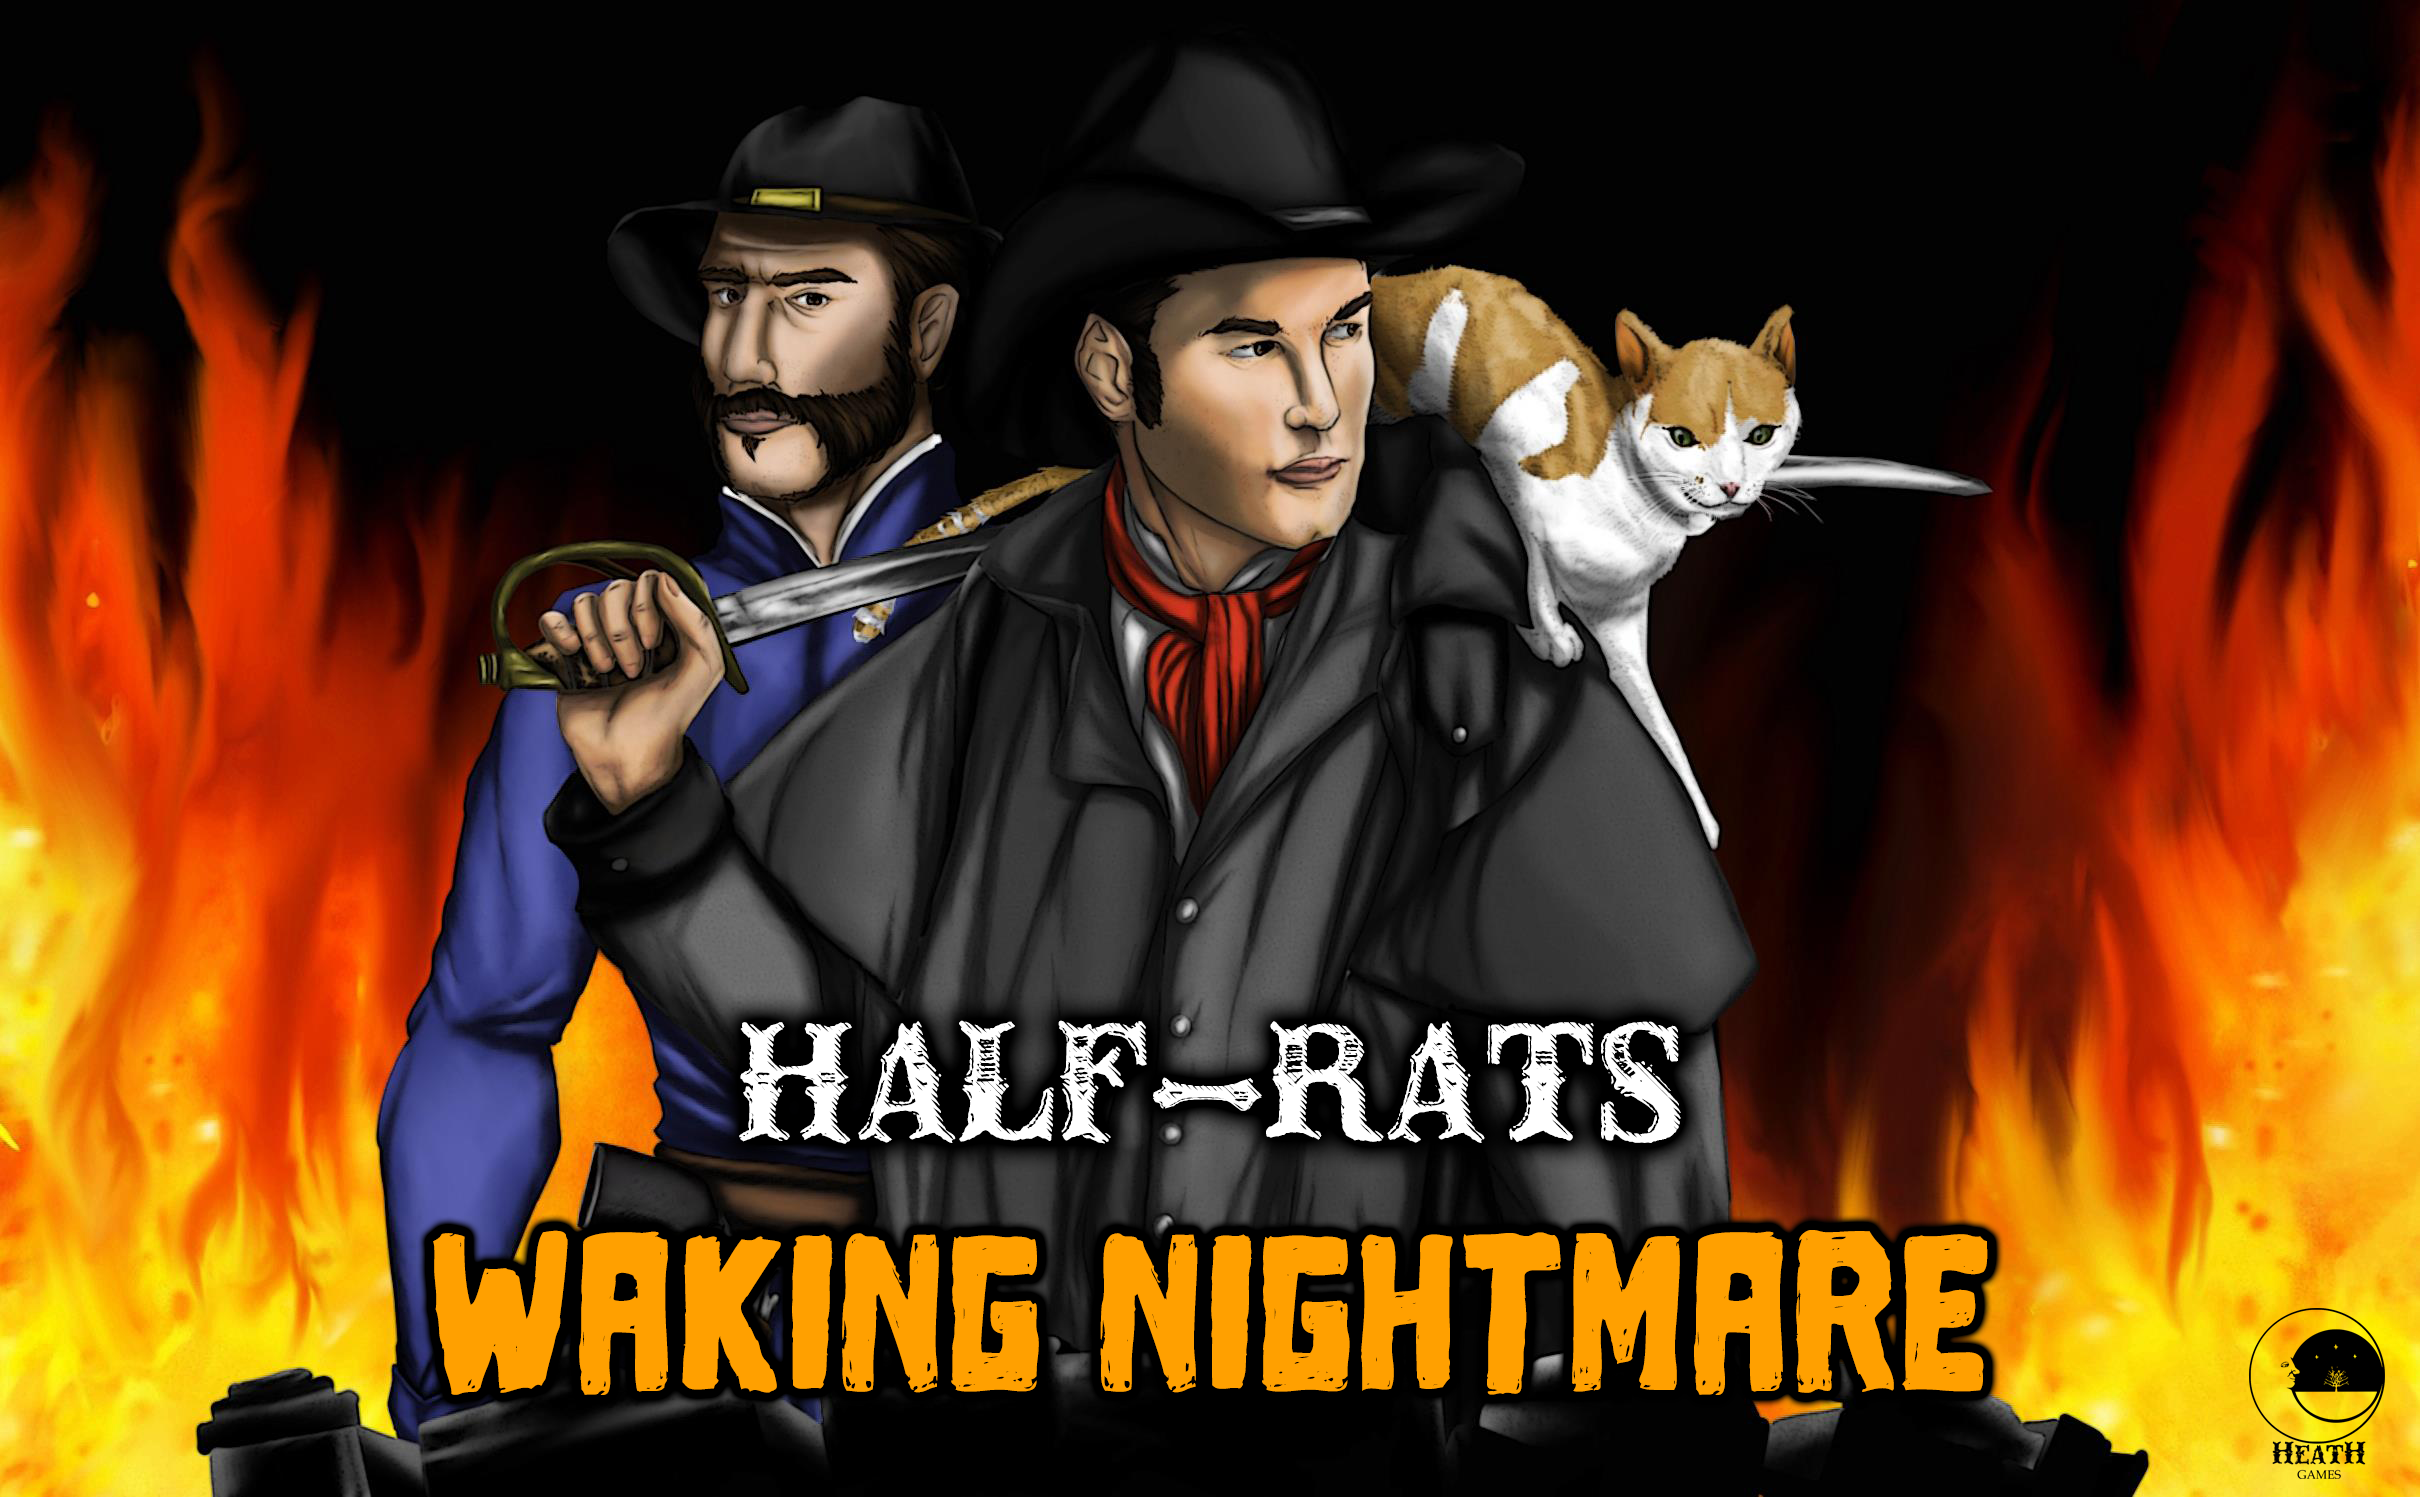 Half Rats Poster2